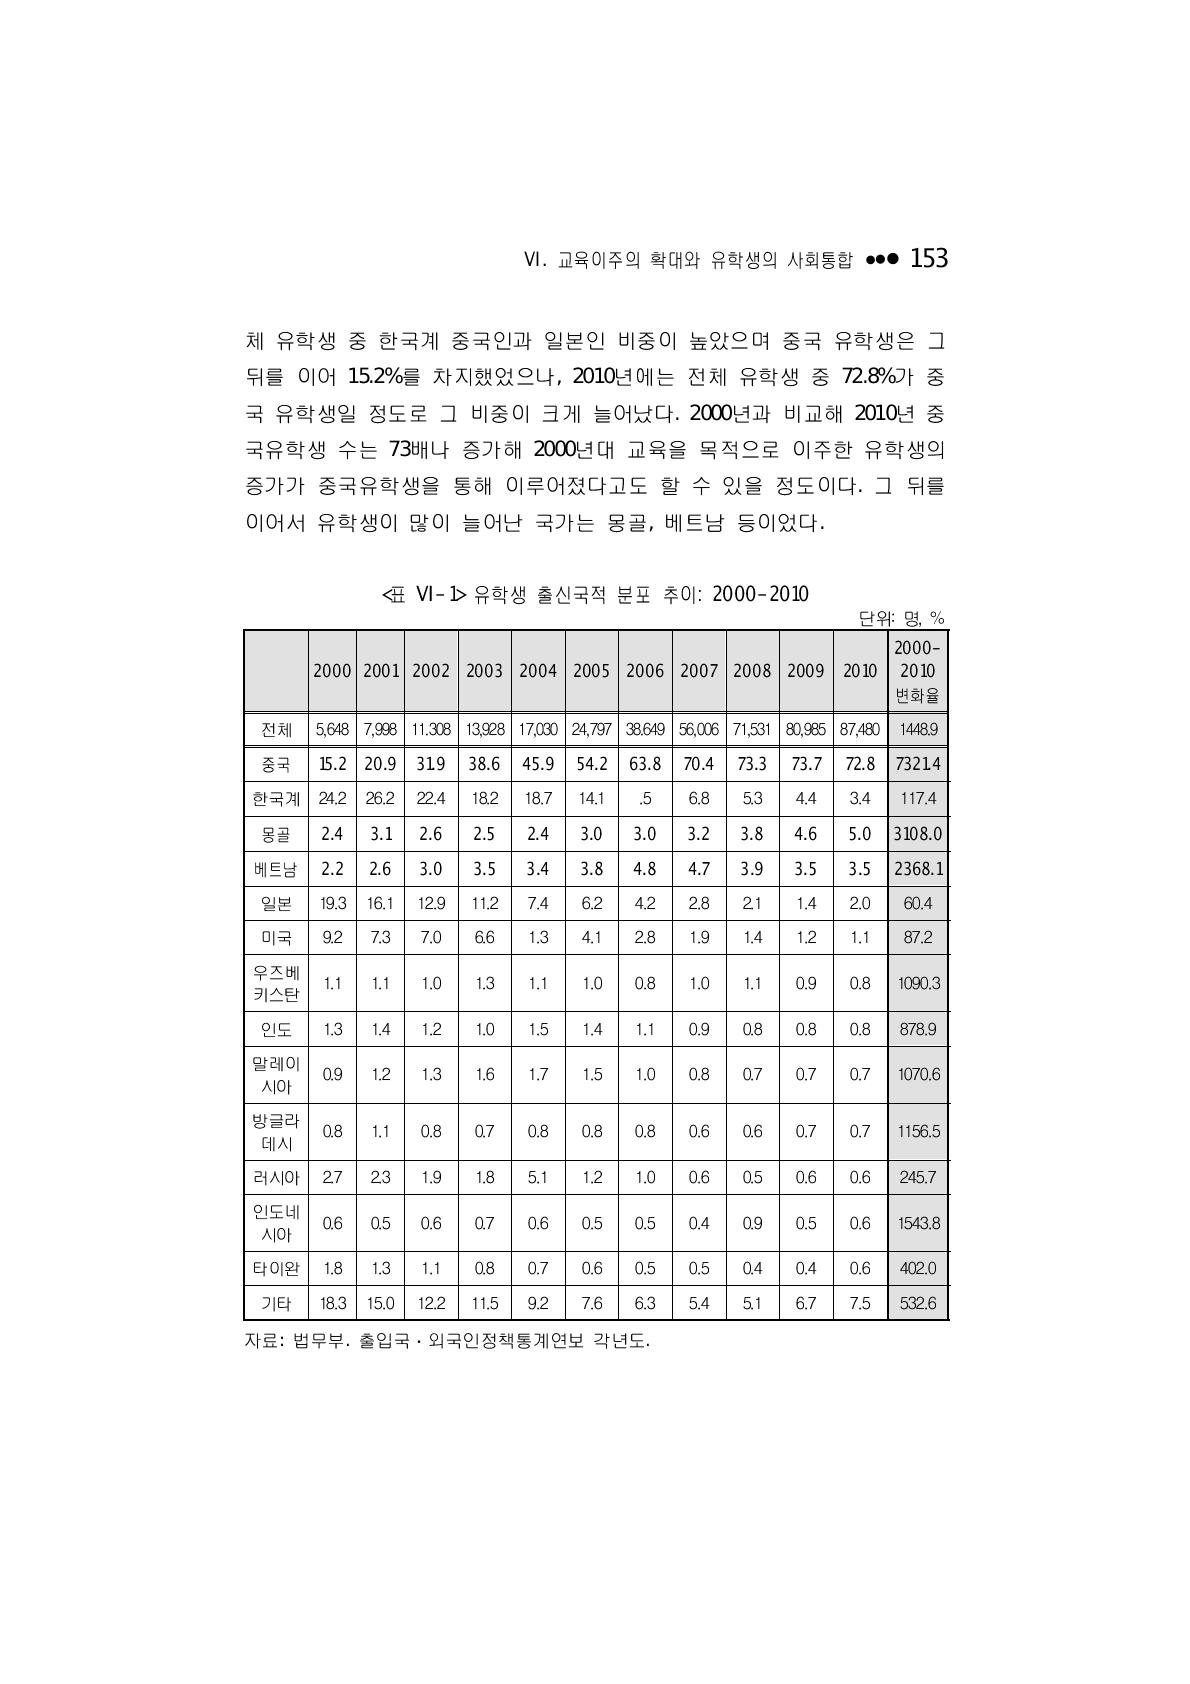 유학생 출신국적 분포 추이: 2000-2010